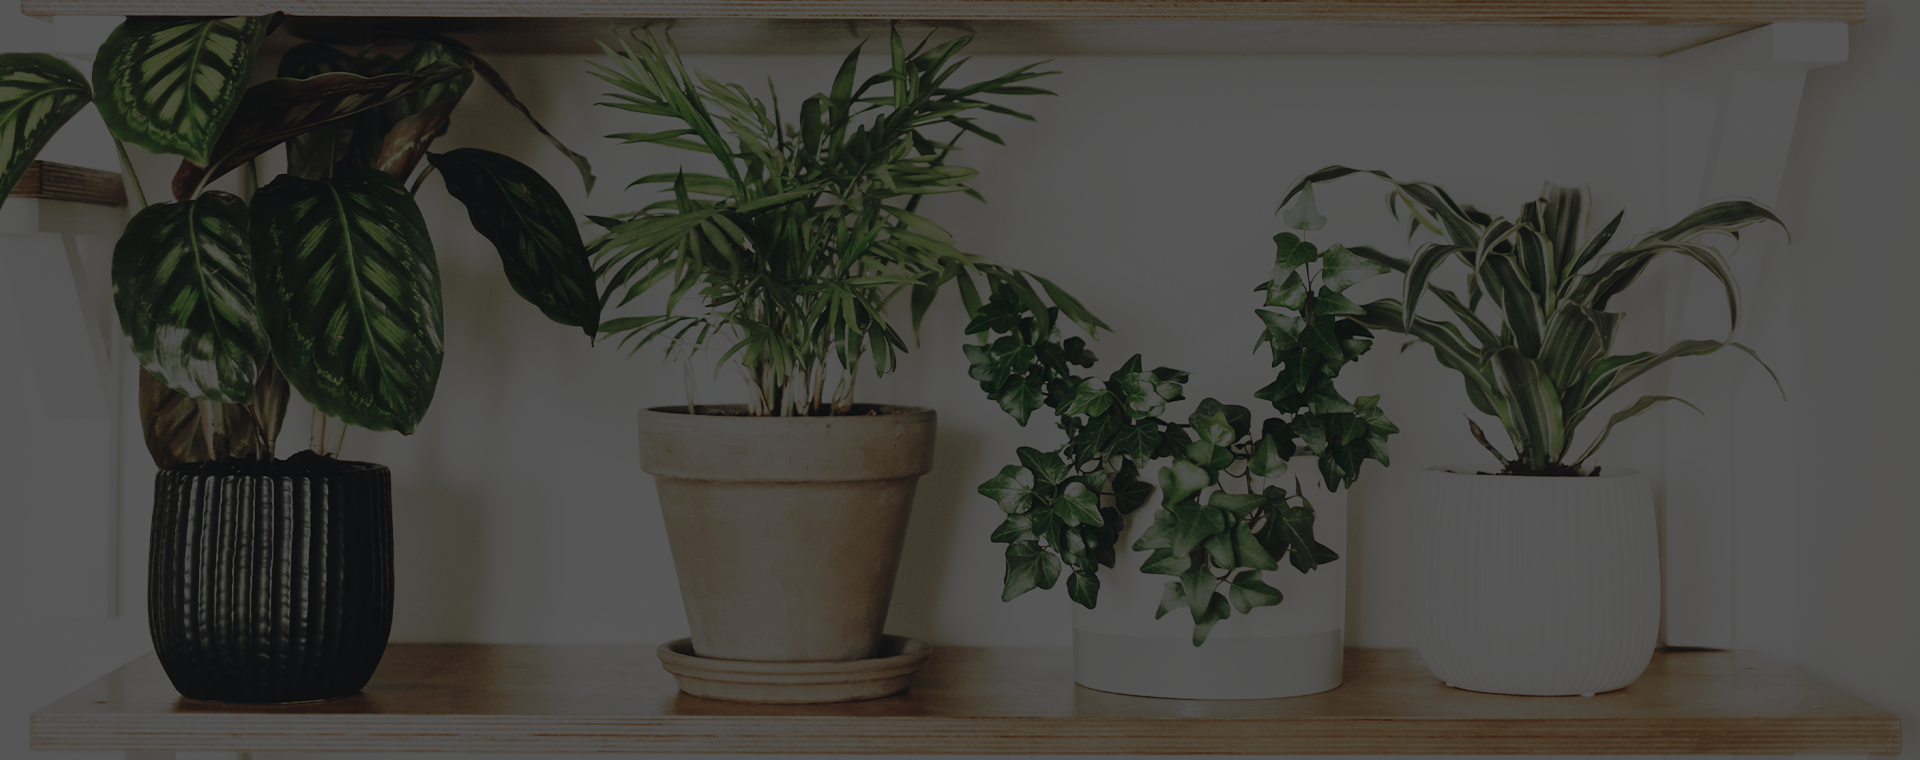 Plantas como decoração e seus benefícios